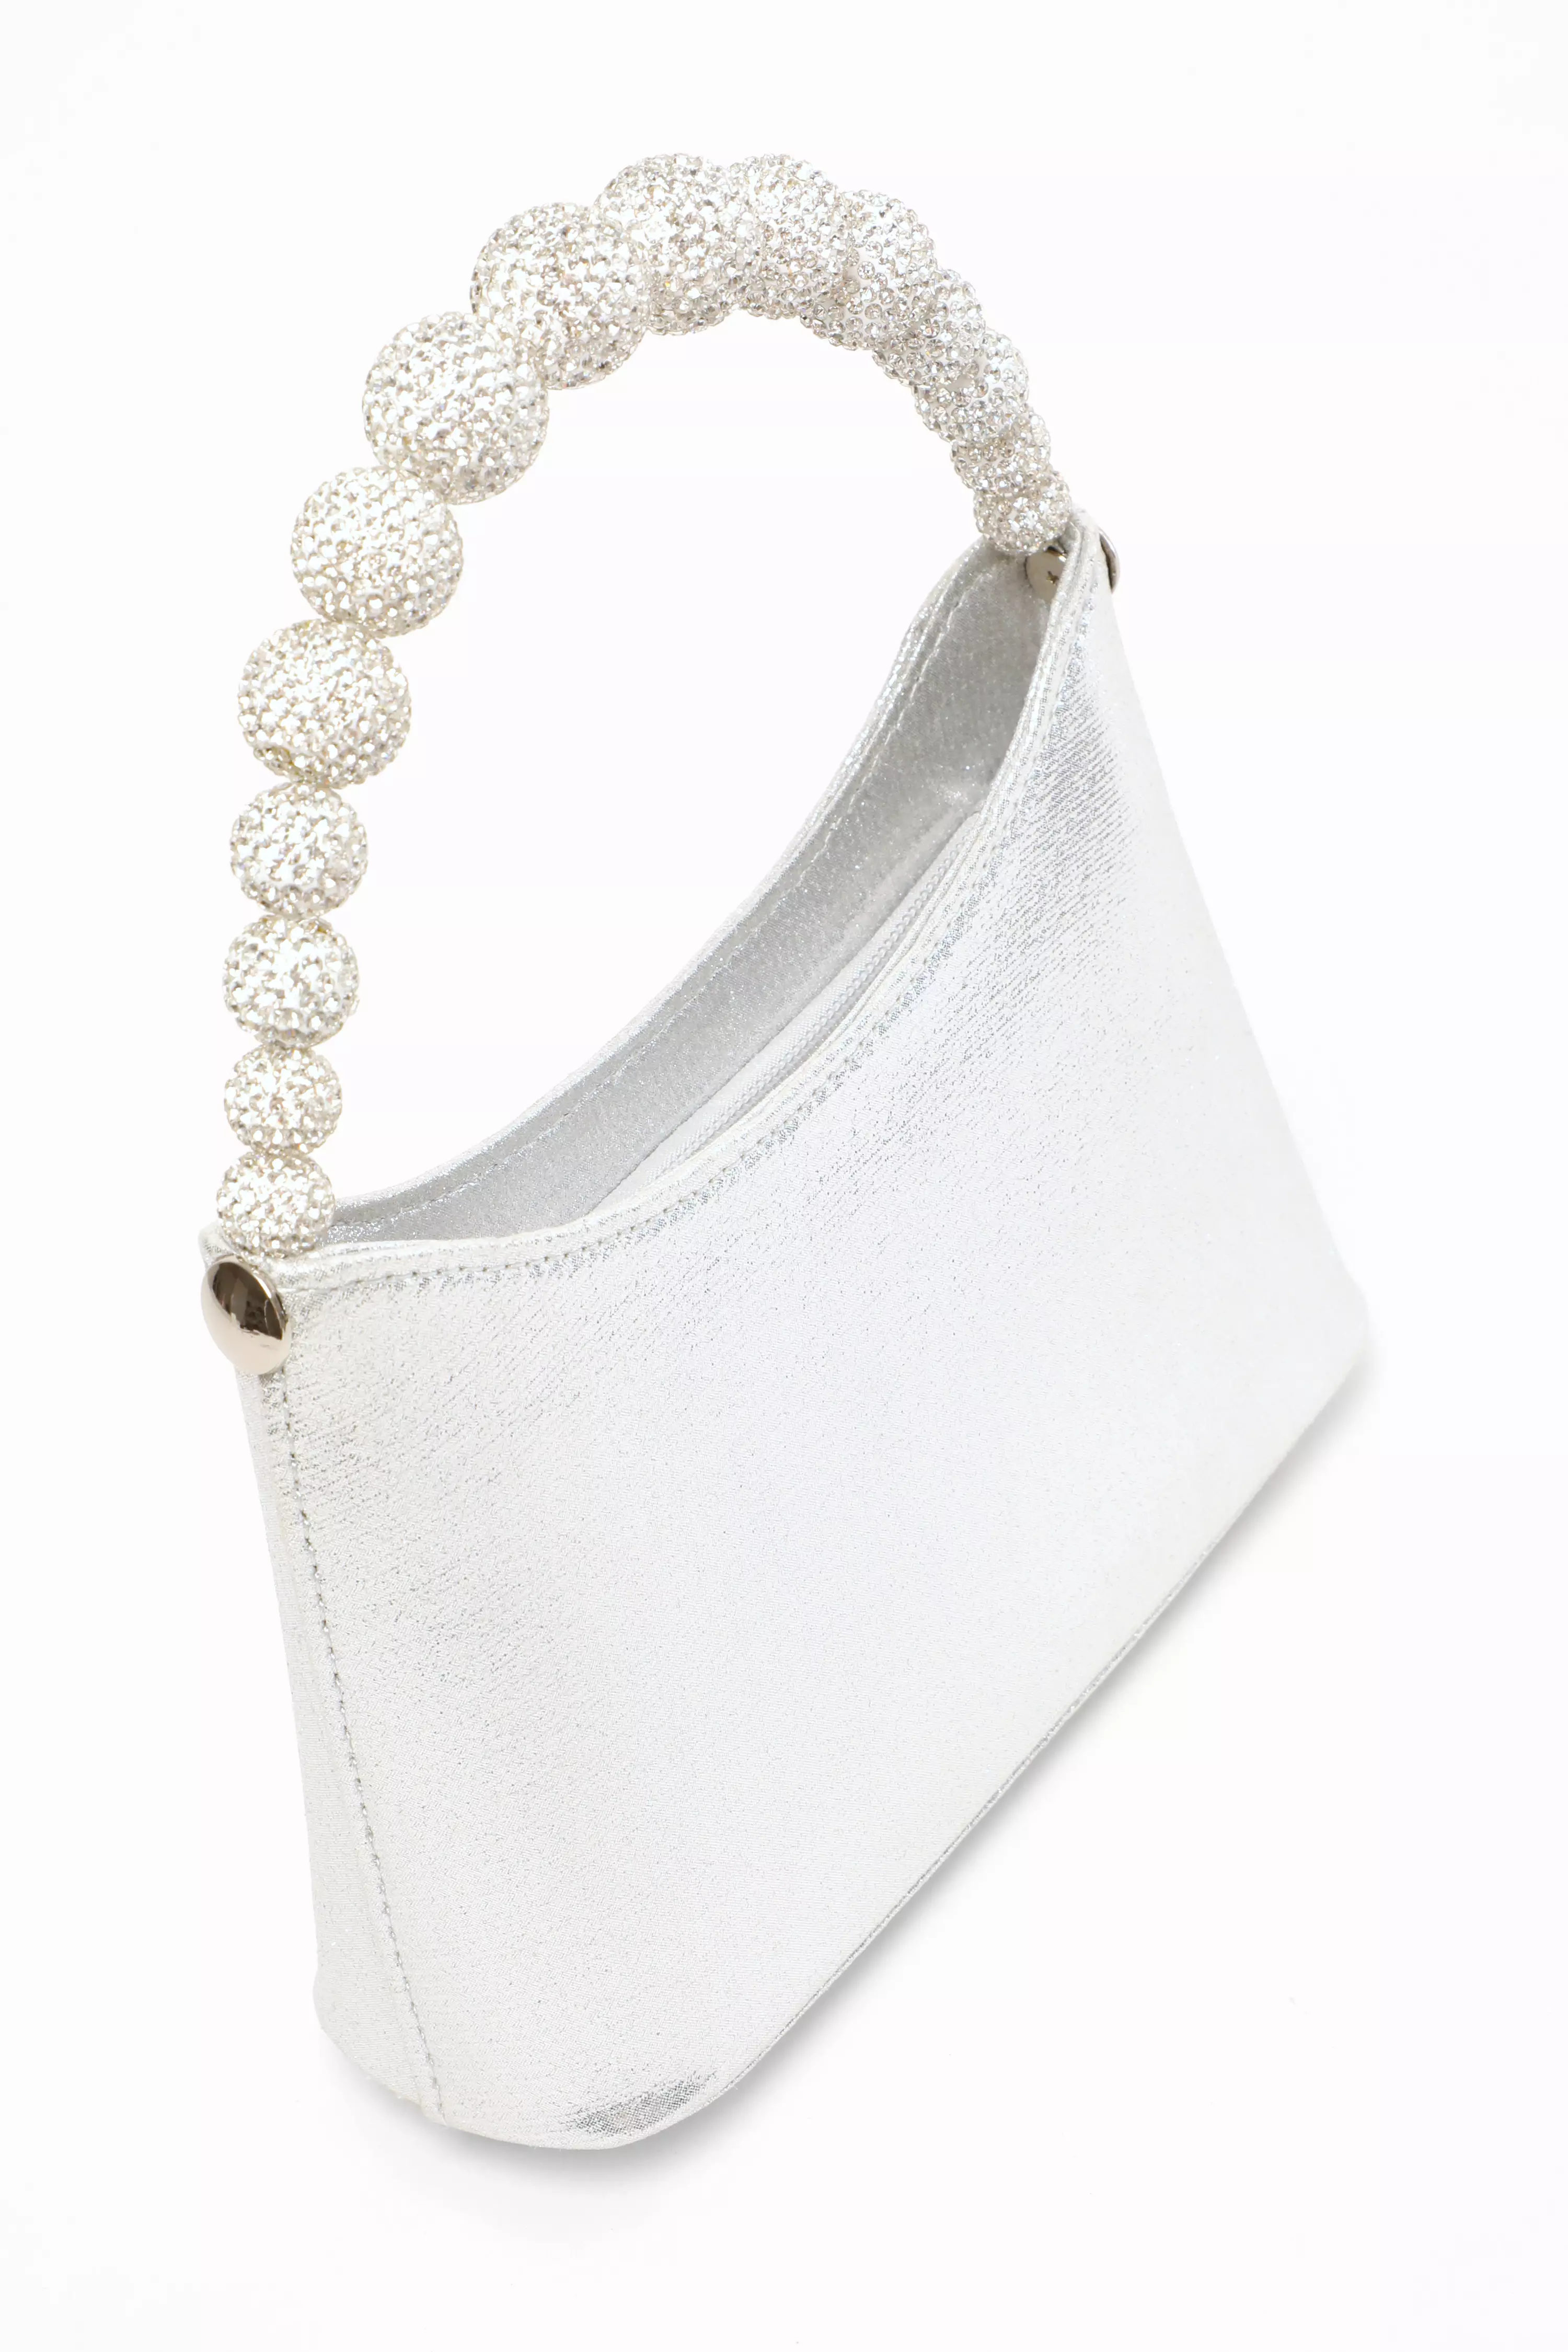 Silver Diamante Top Handle Bag